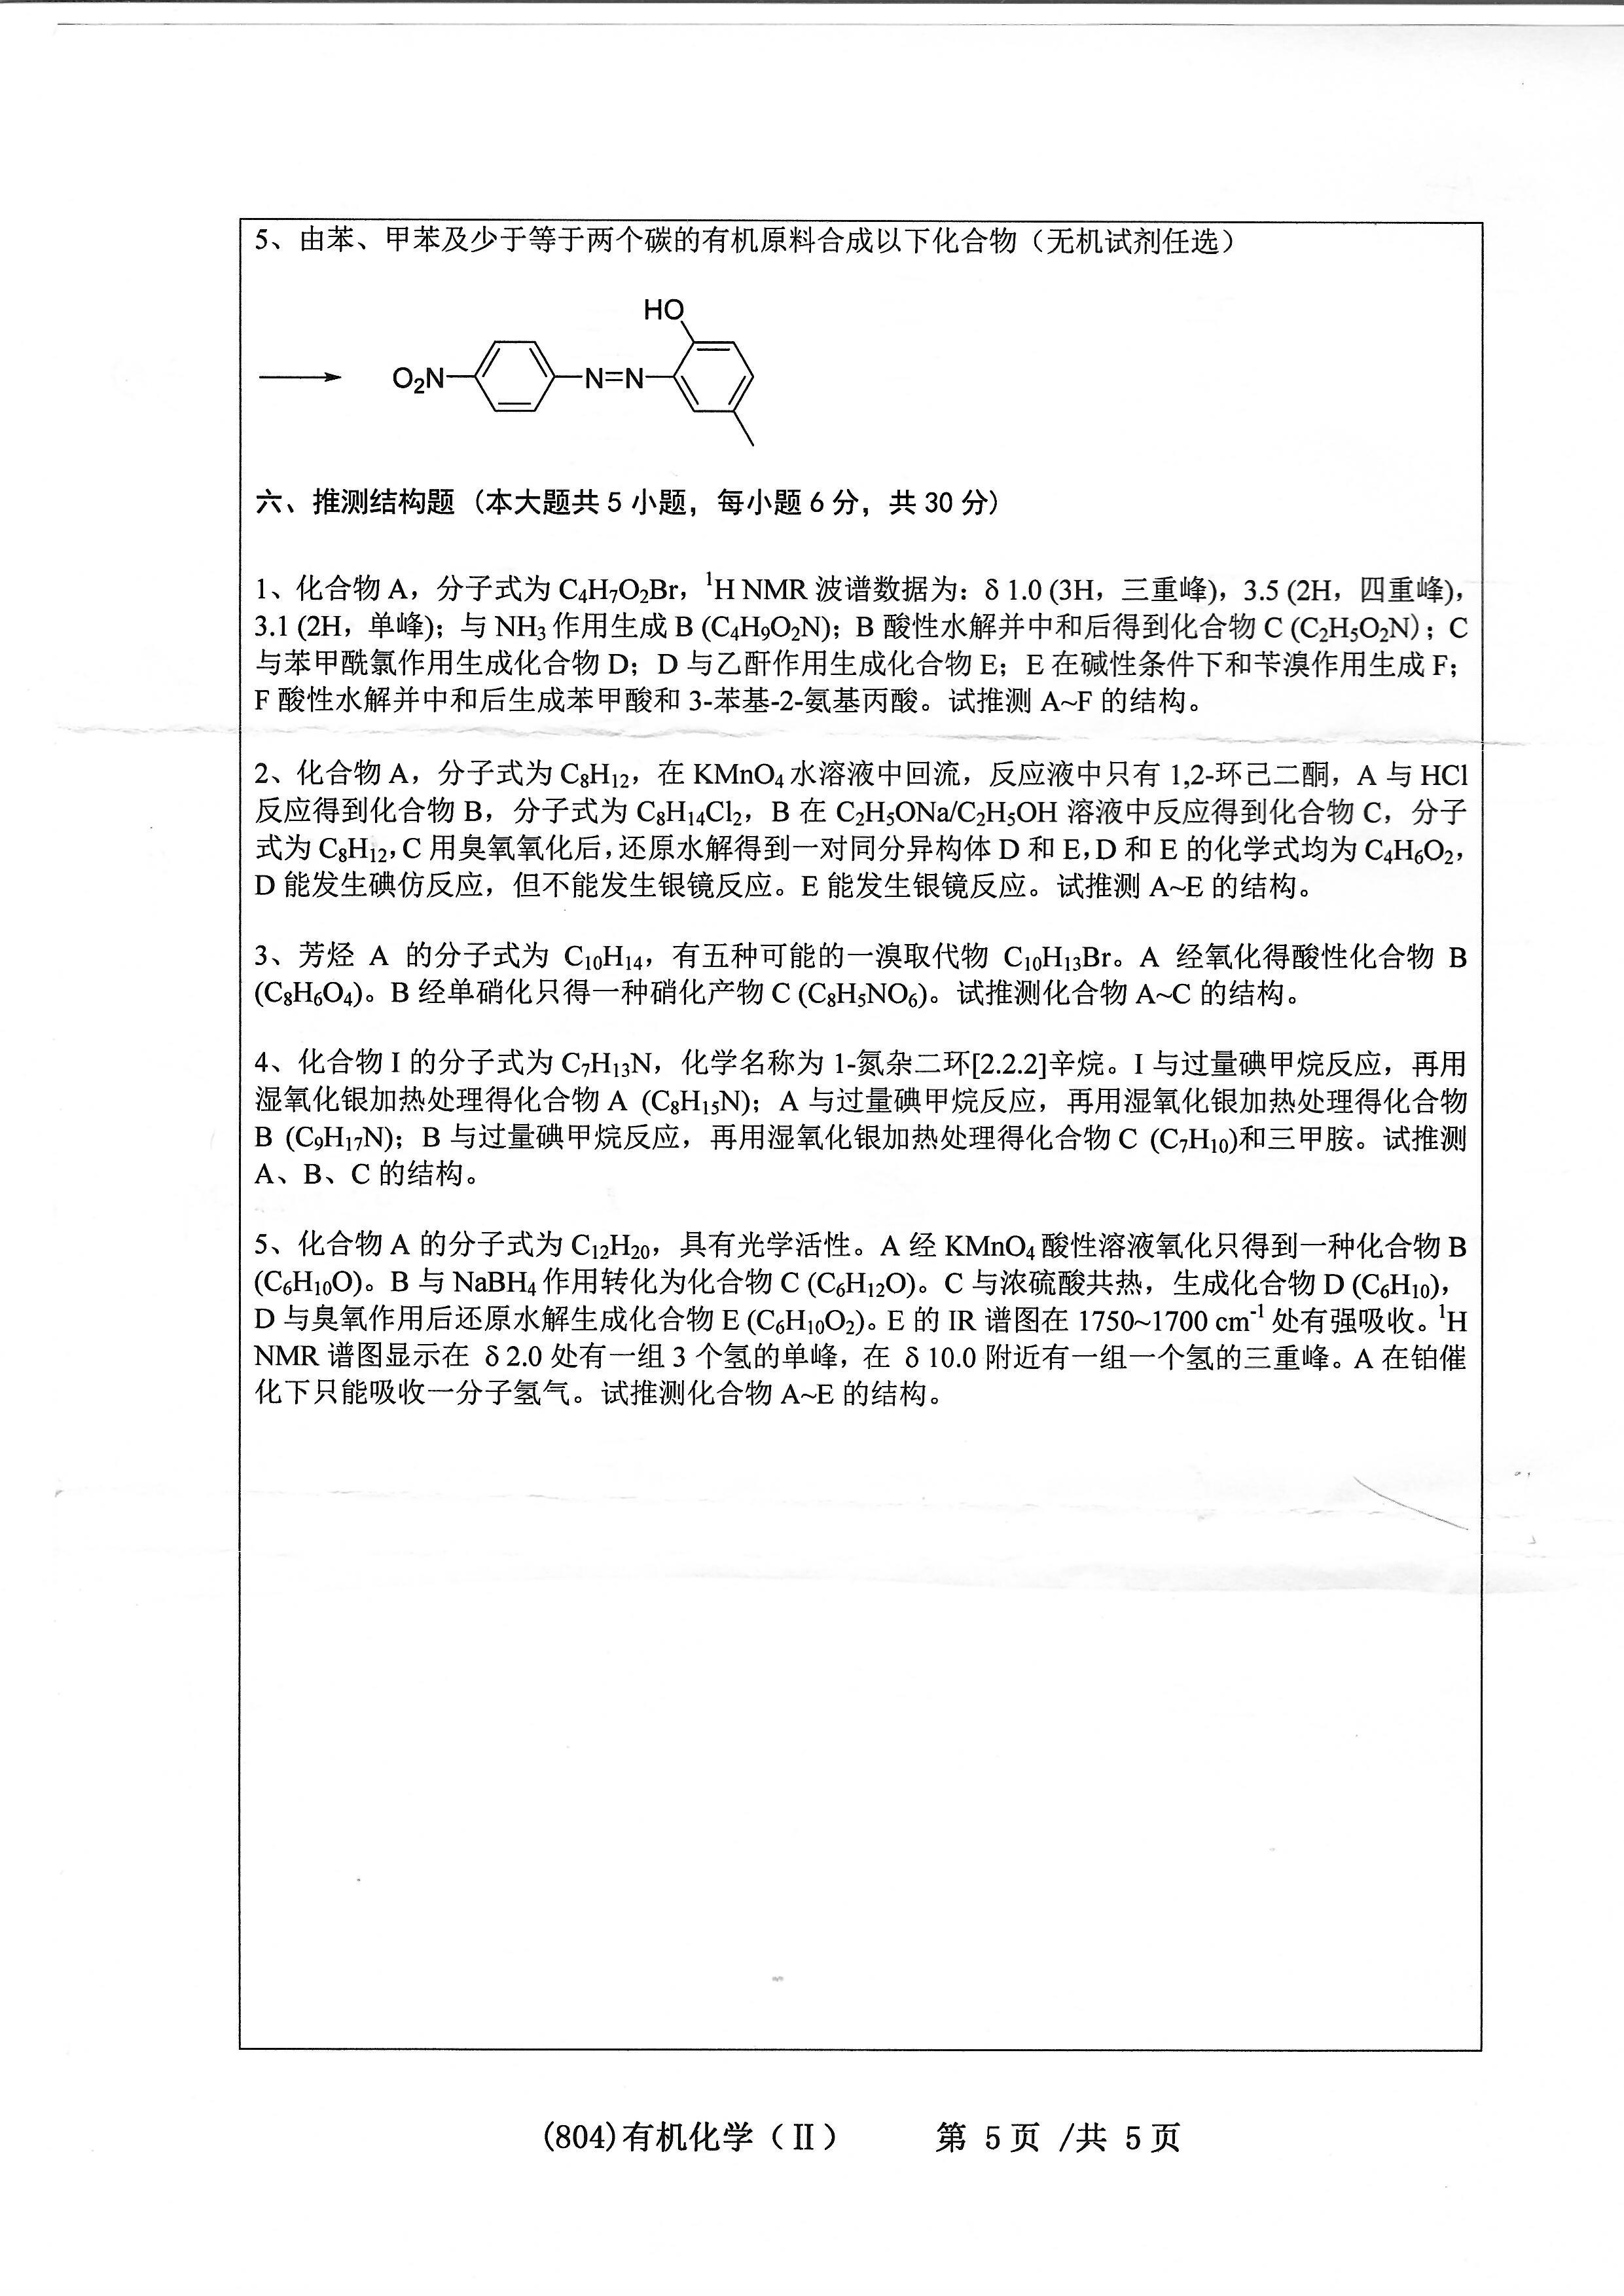 804有机化学（II）2020年考研初试试卷真题（浙江工业大学）